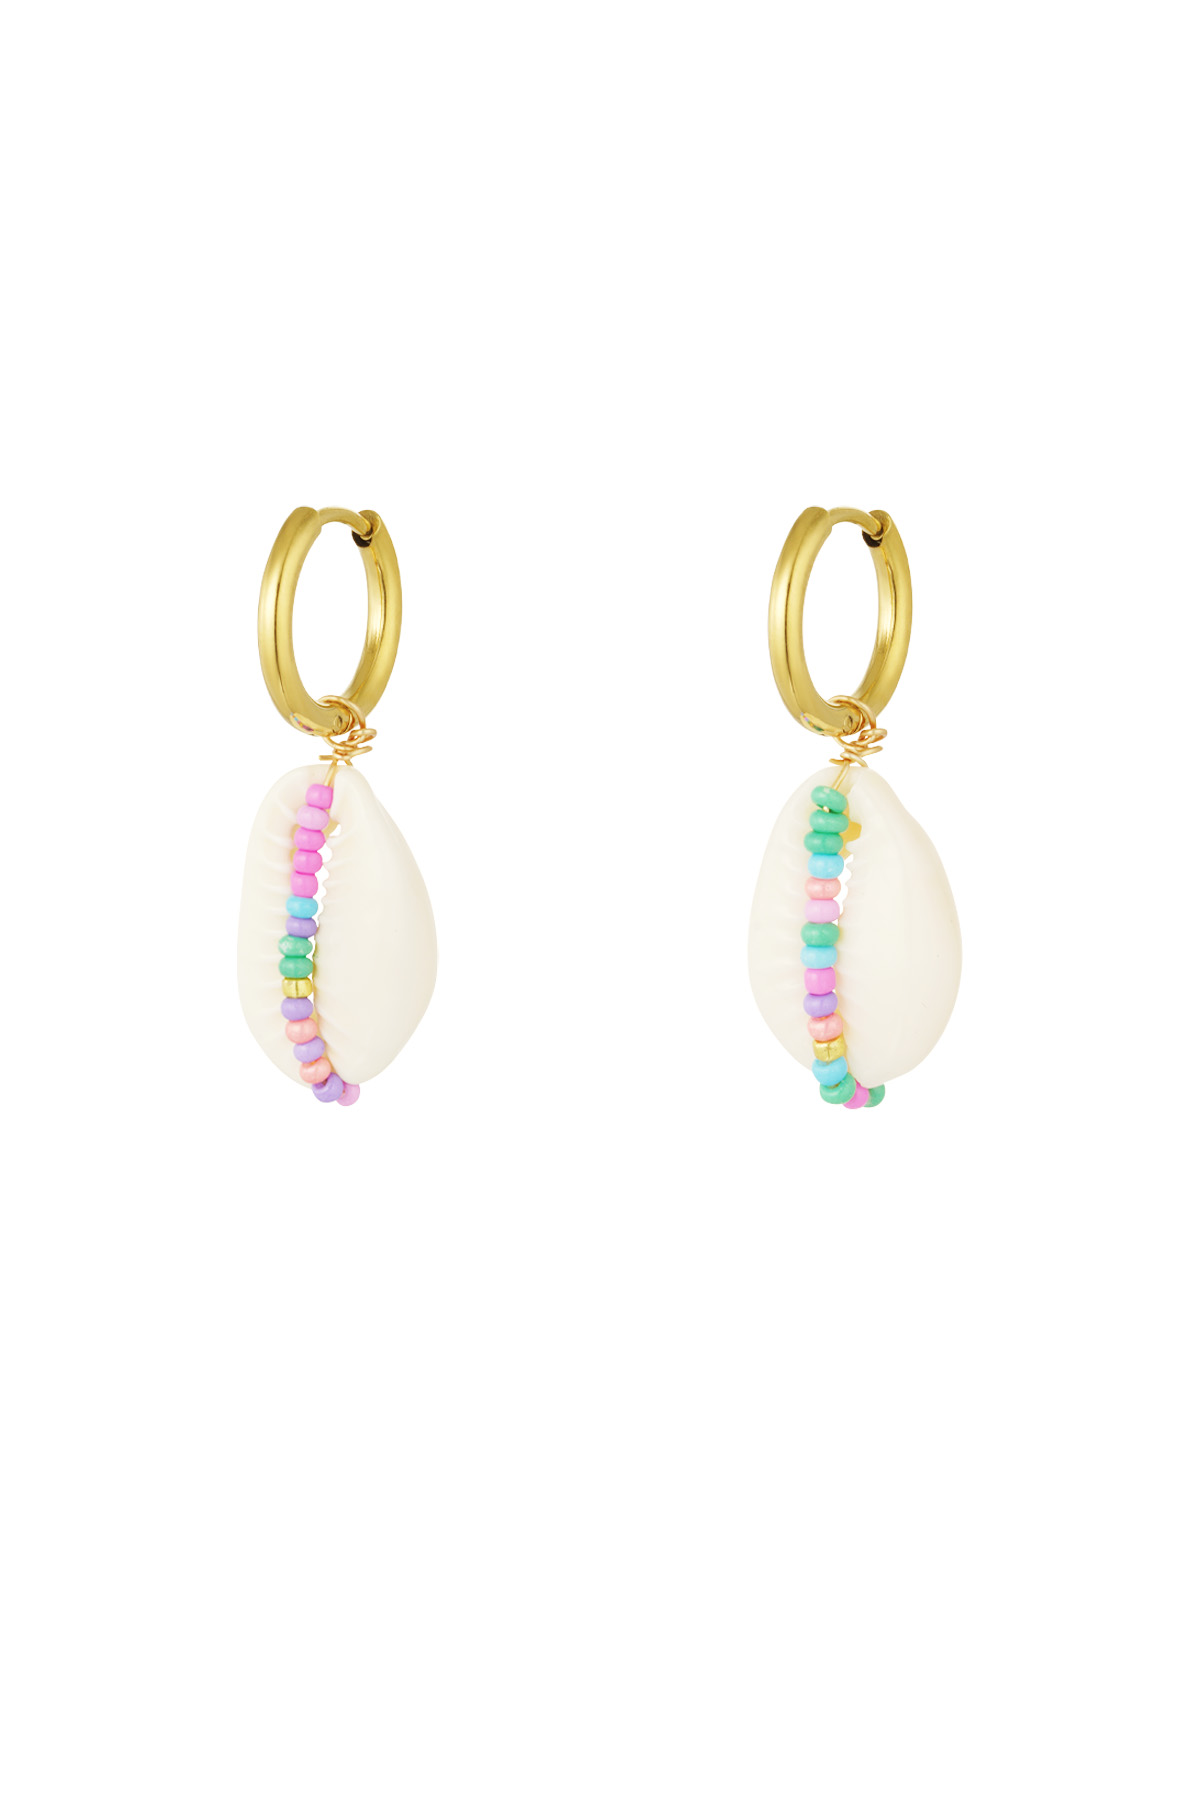 Boucles d'oreilles en acier inoxydable avec coquillage et perles de verre - Multicolores